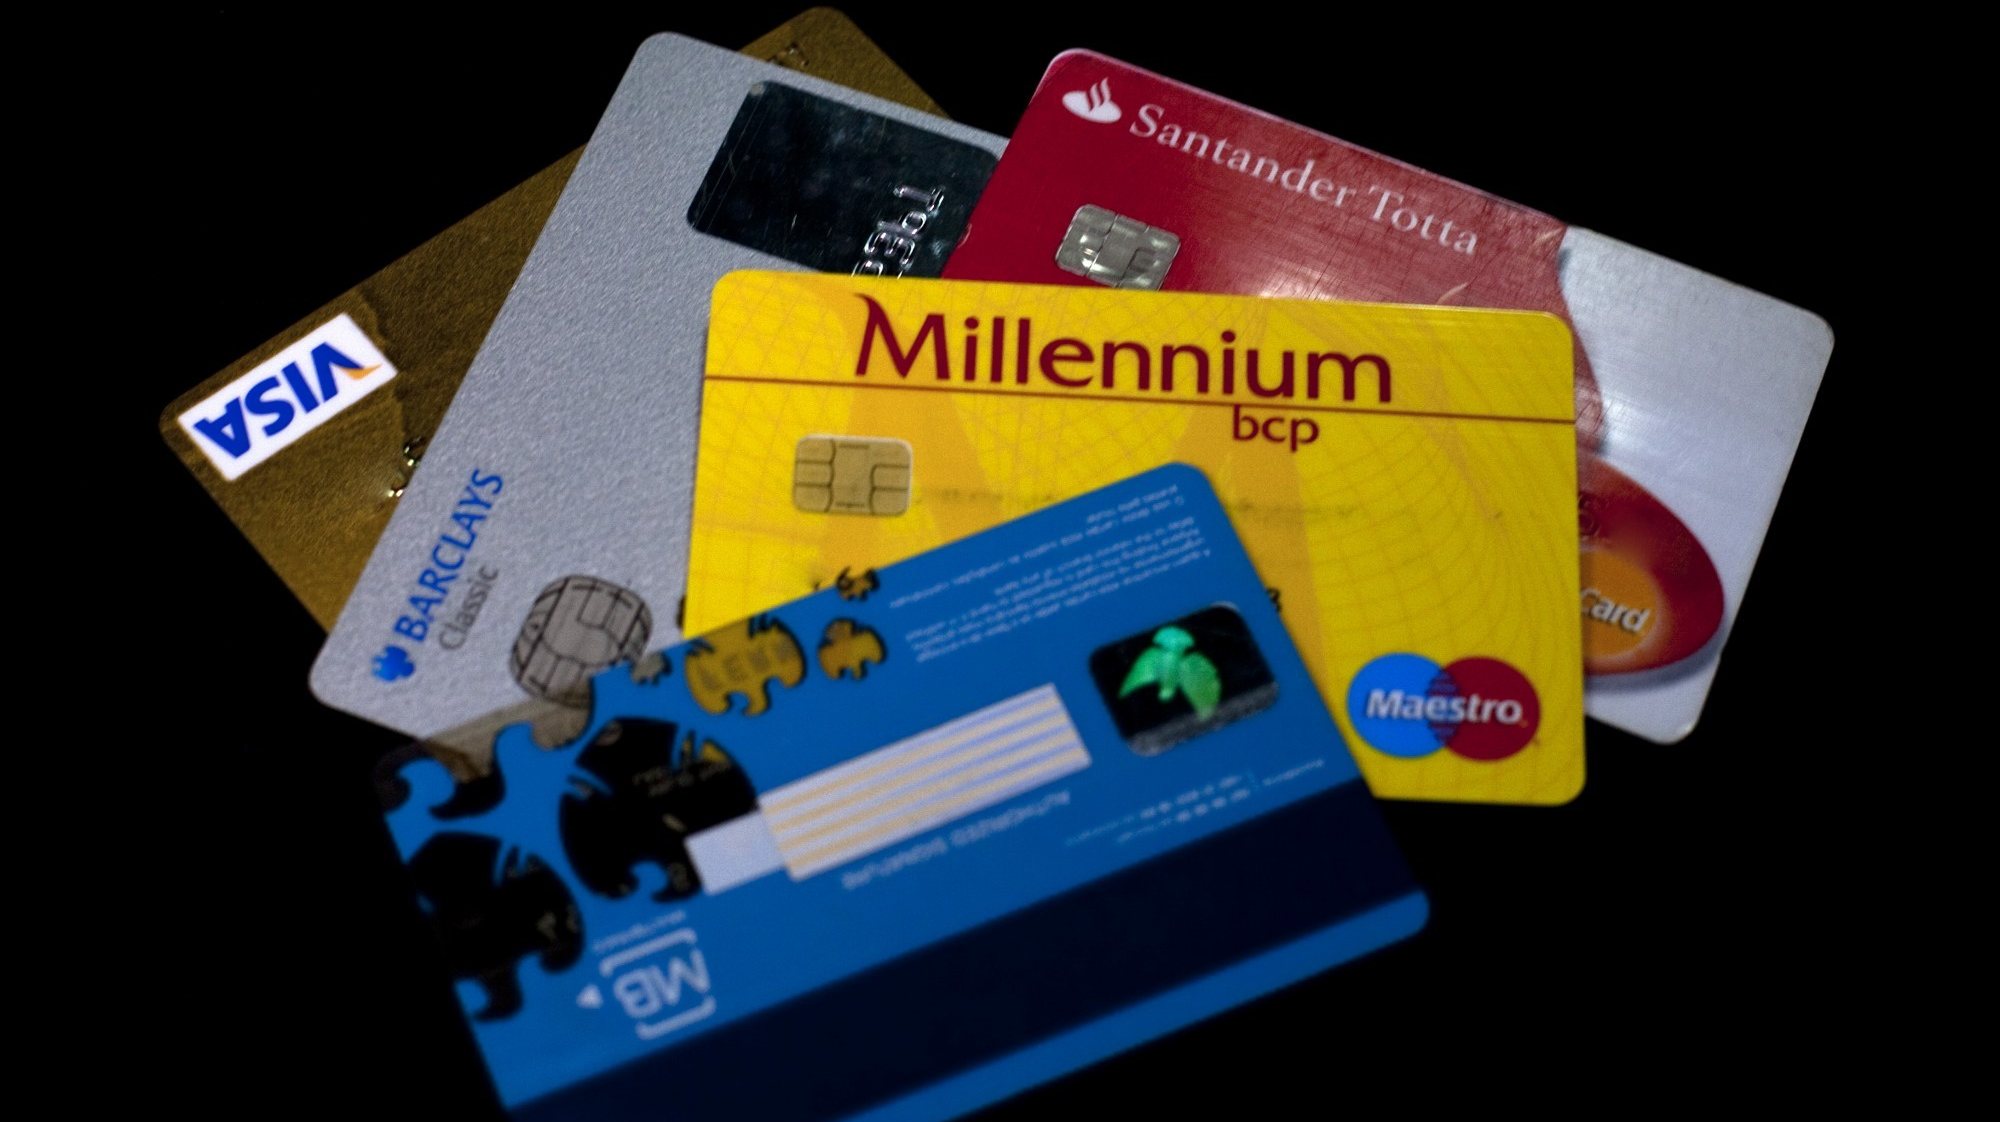 Clientes terão de ter cartão bancário para fazer pagamentos de serviços a partir de janeiro